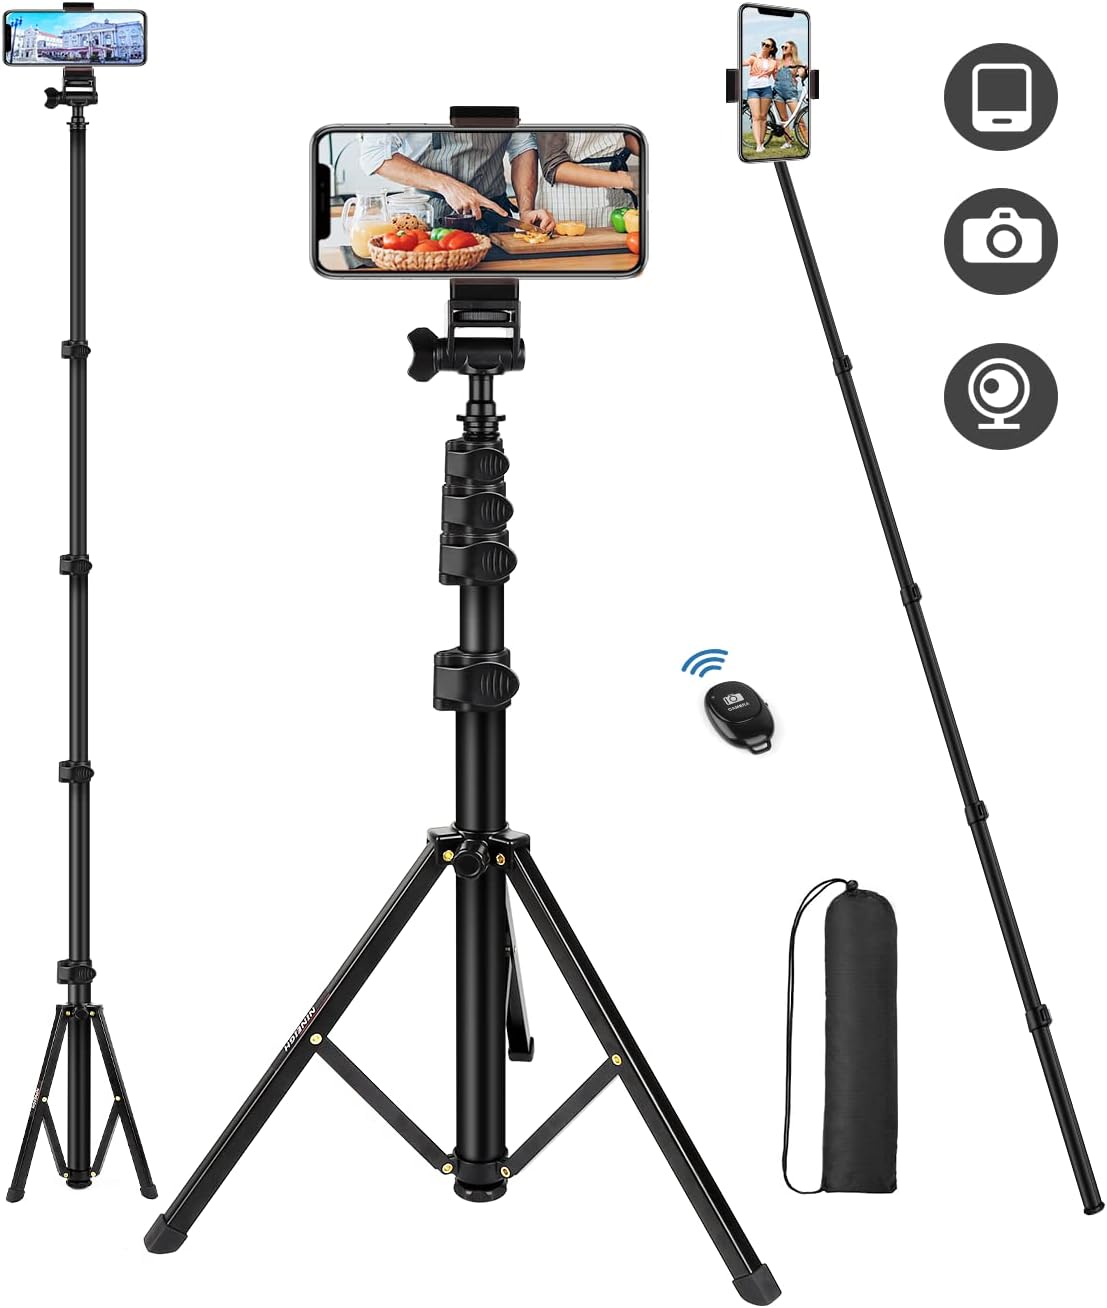 El soporte profesional con trípode para el móvil que necesitas para grabar  vídeos